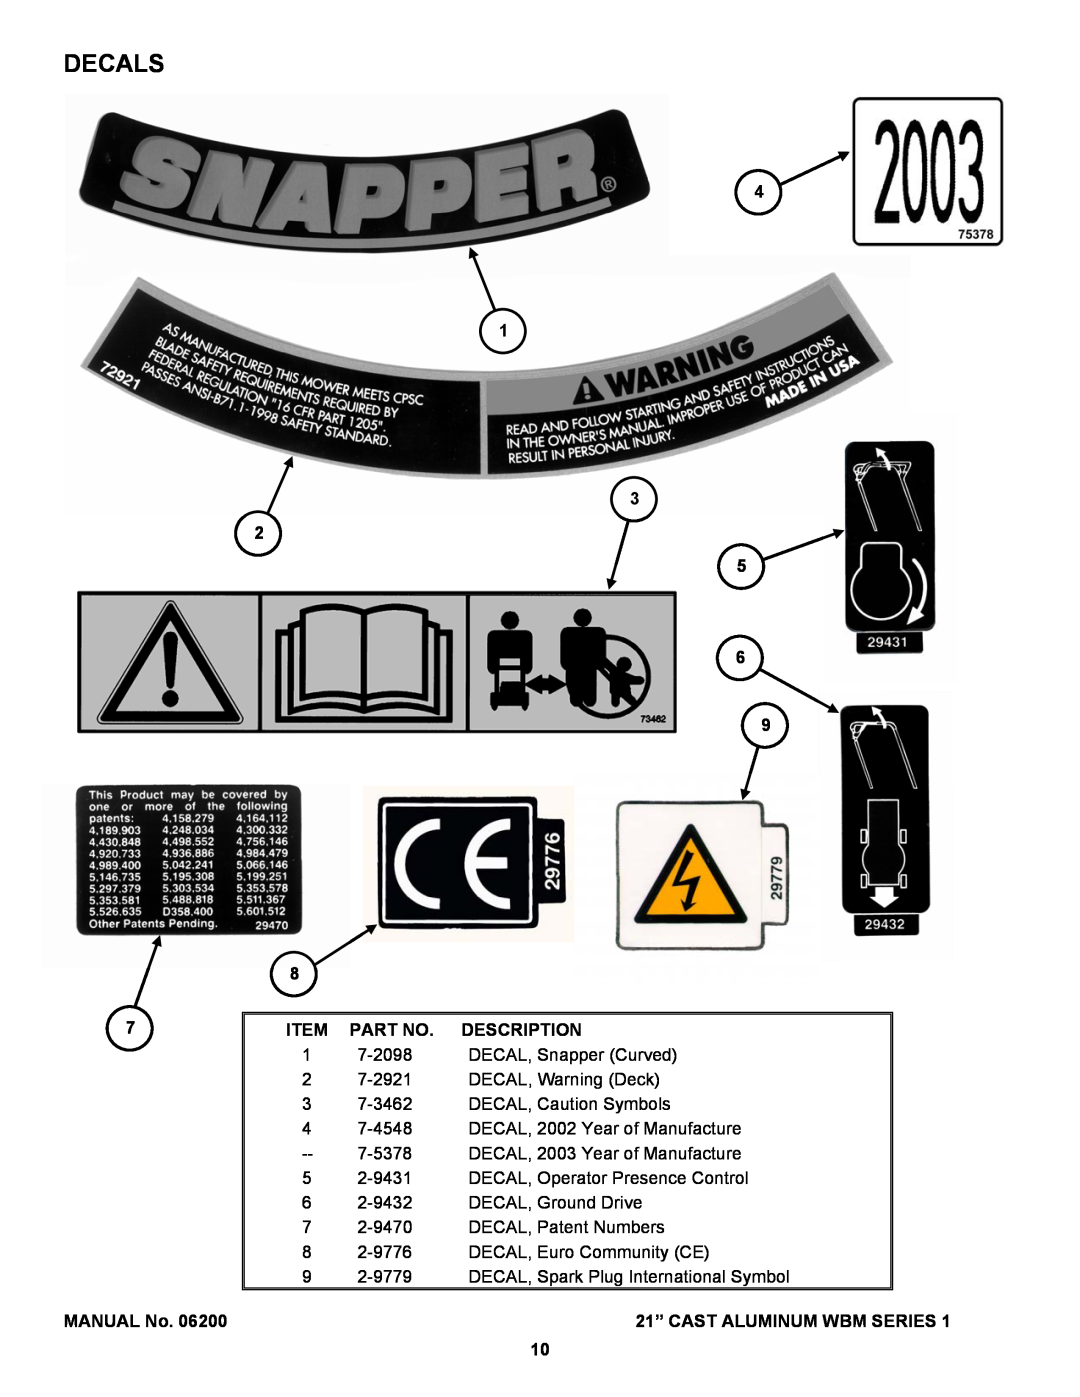 Snapper ECLP21551HV manual Decals 